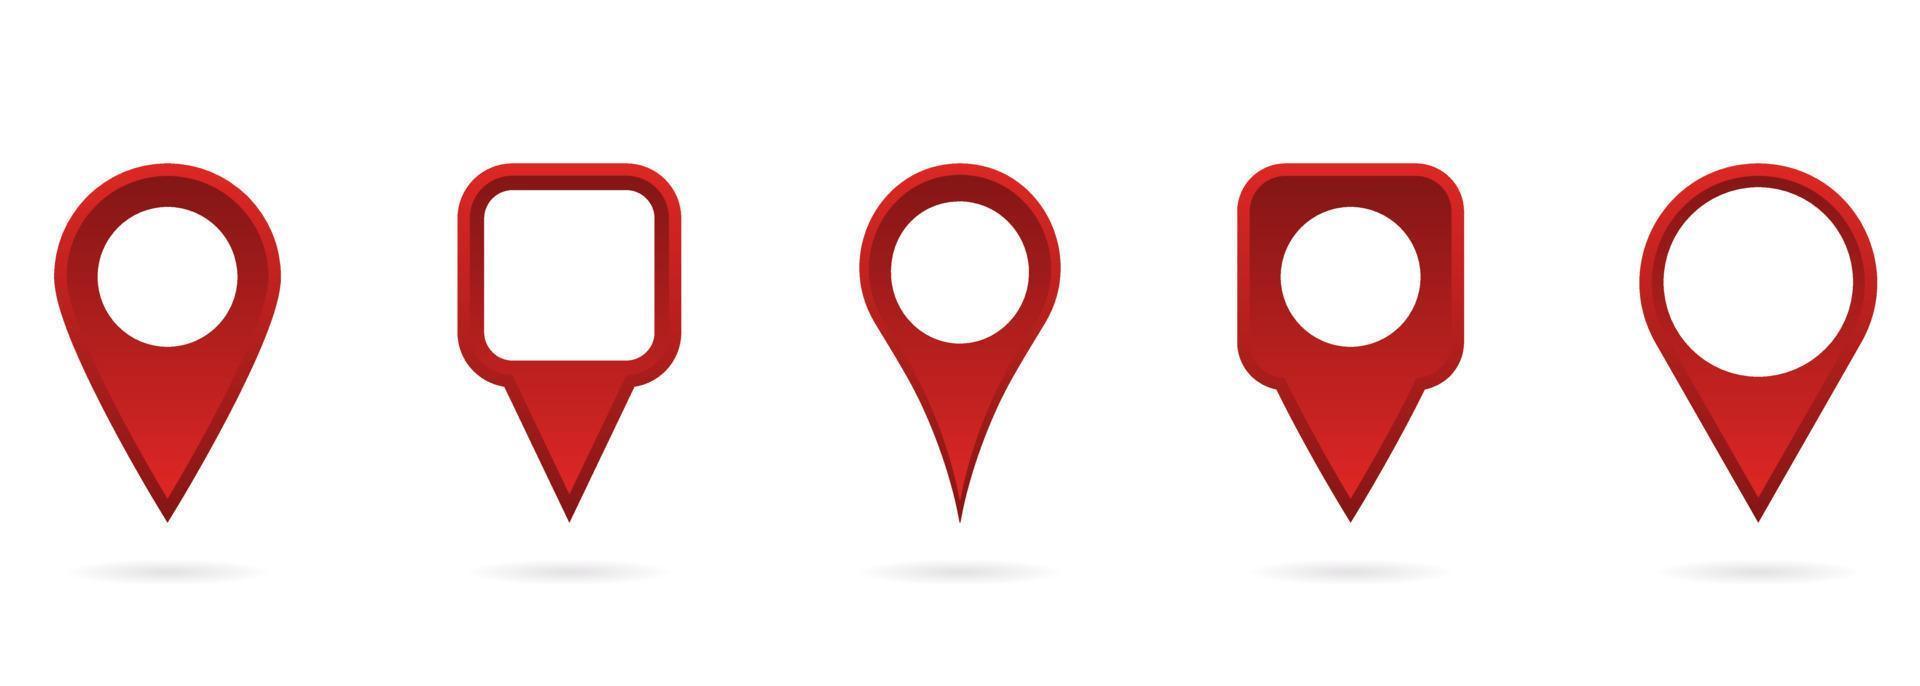 röd platspekare på vit bakgrund. samling av röd gps-tagg och häftstift. ikon för kartmarkörpunkter. pekaren navigering symbol. isolerade vektor illustration.